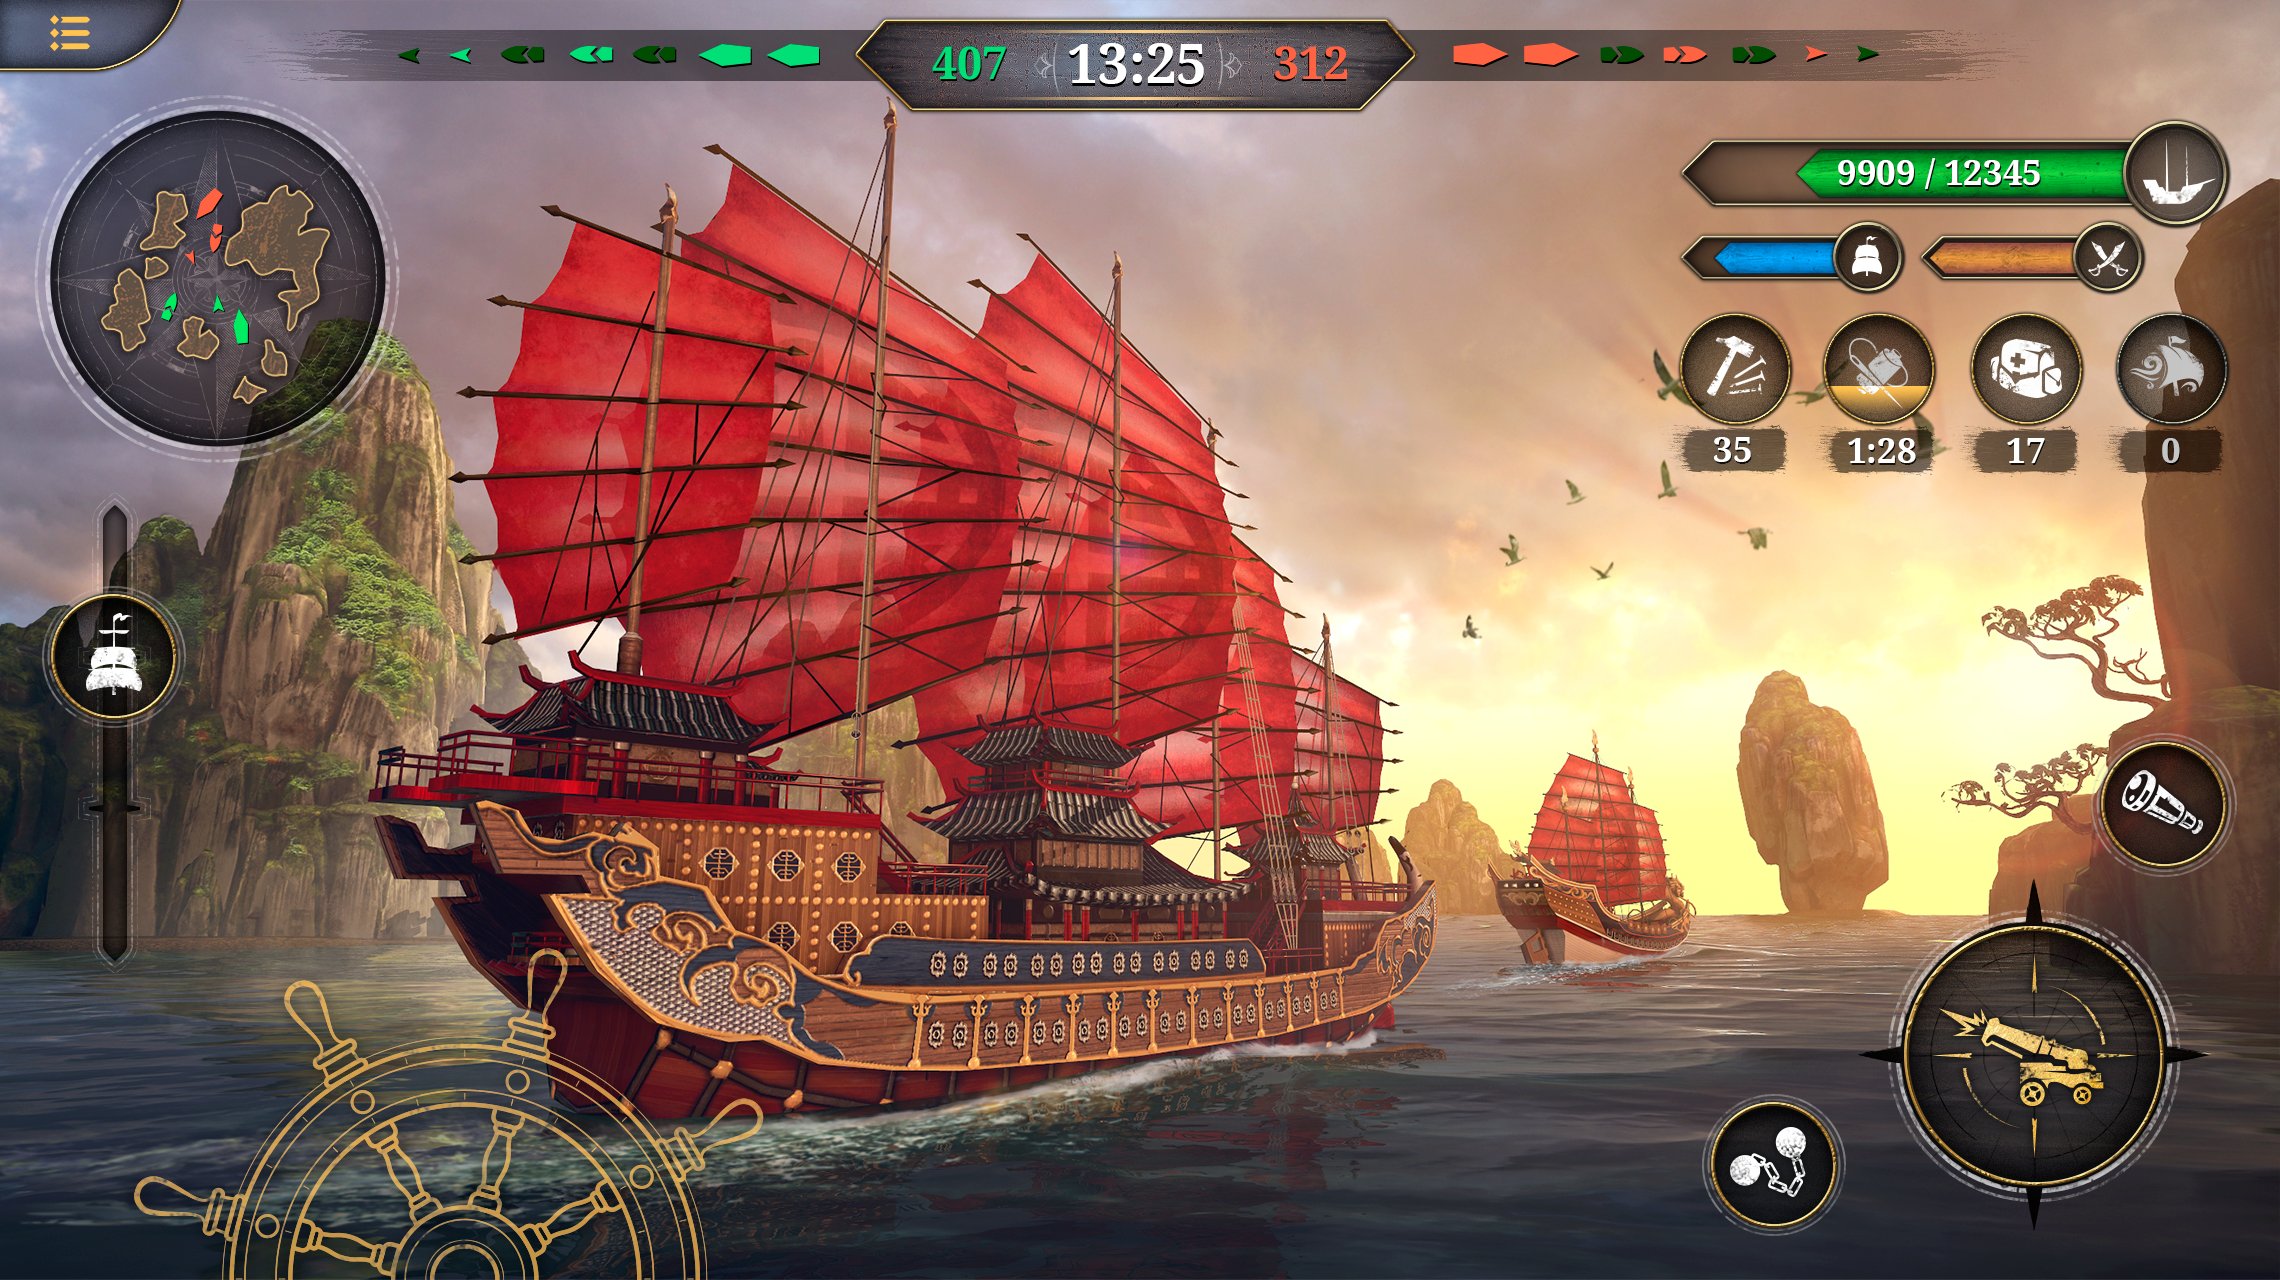 キングオブセイルズ: 海賊船ゲームのキャプチャ